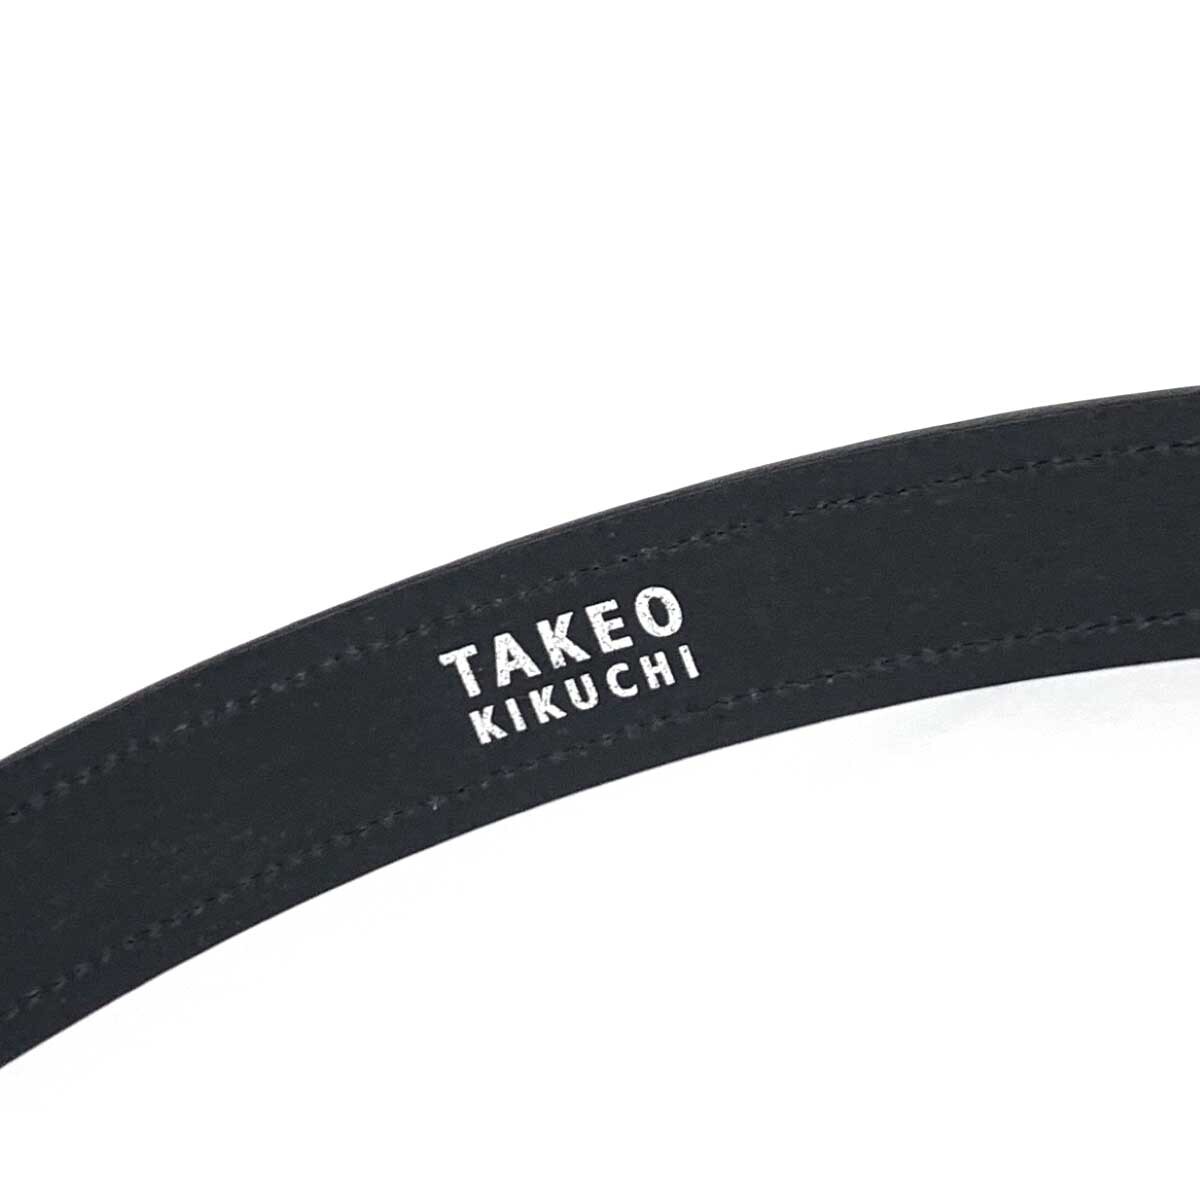 新品同様◆TAKEO KIKUCHI タケオキクチ ベルト ◆ ブラック レザー ピンバックル フォーマル メンズ 服飾小物_画像7